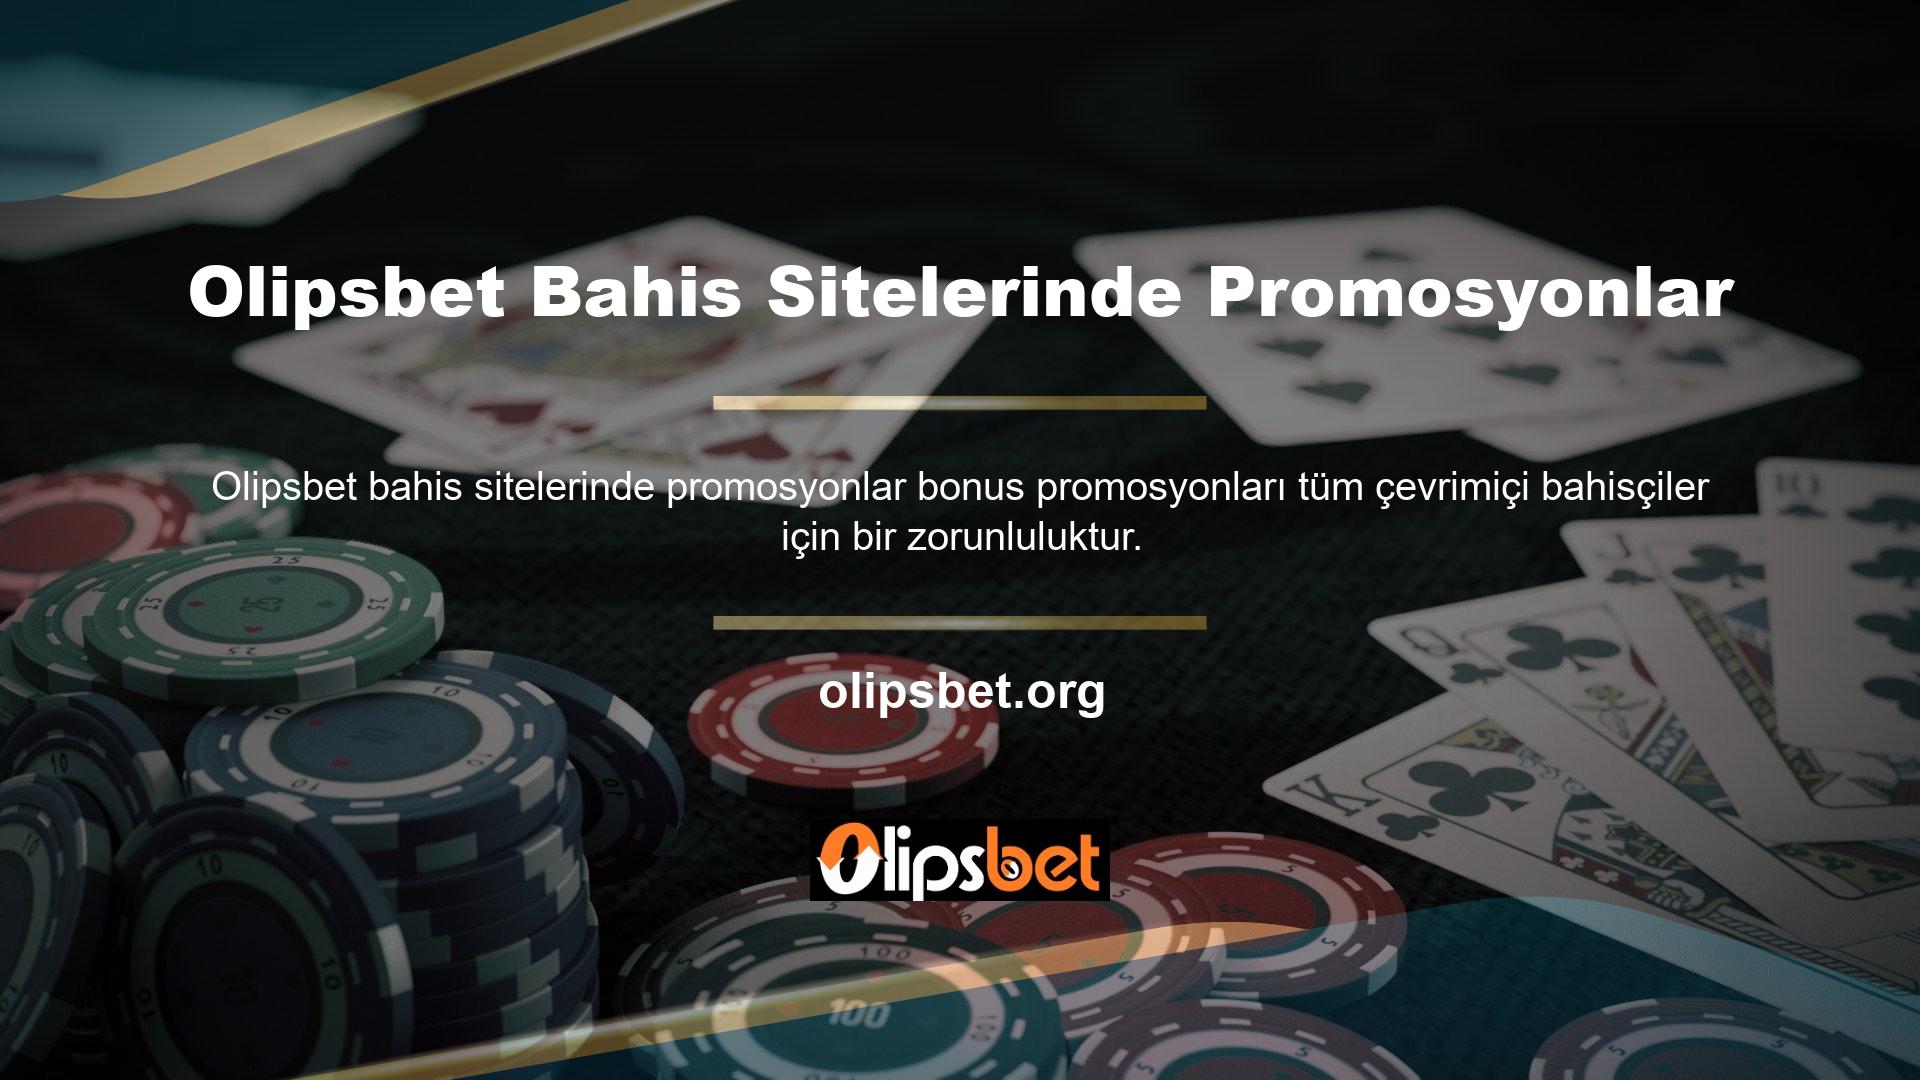 Bu amaçla Olipsbet bahis sitelerinde tüm bahis platformlarında ve casinolarda bonus promosyonları detaylı reklam kampanyaları yürütmektedir